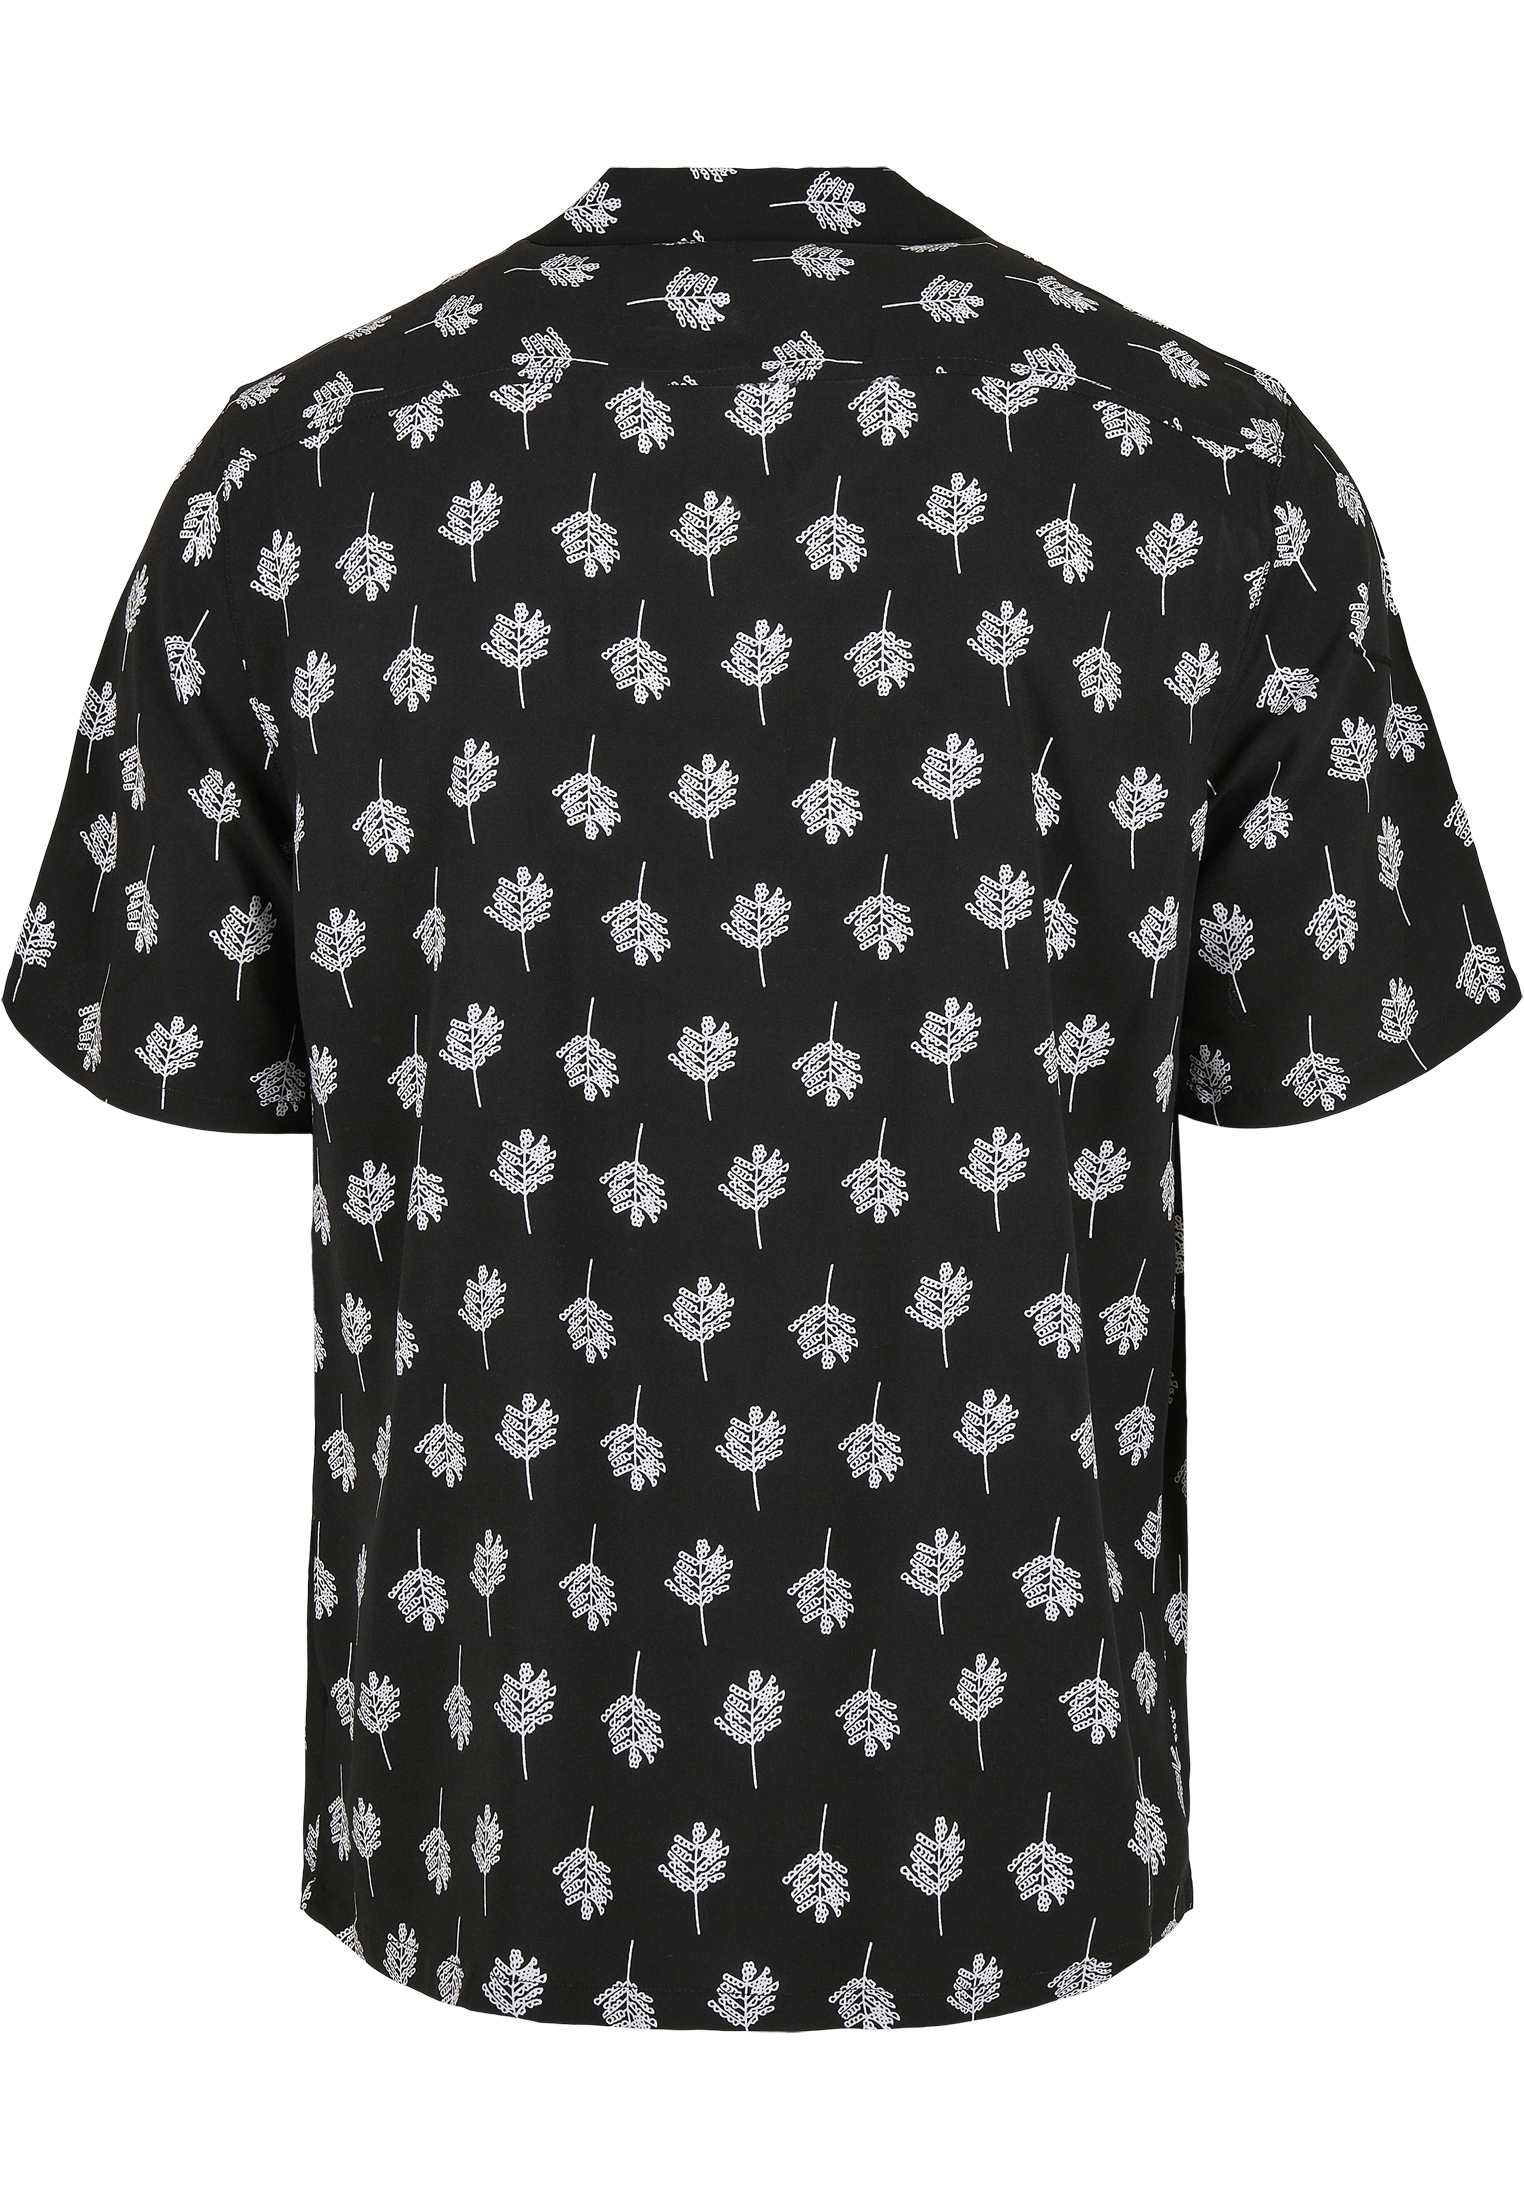 Hemden Viscose Resort Shirt in Farbe black blossom